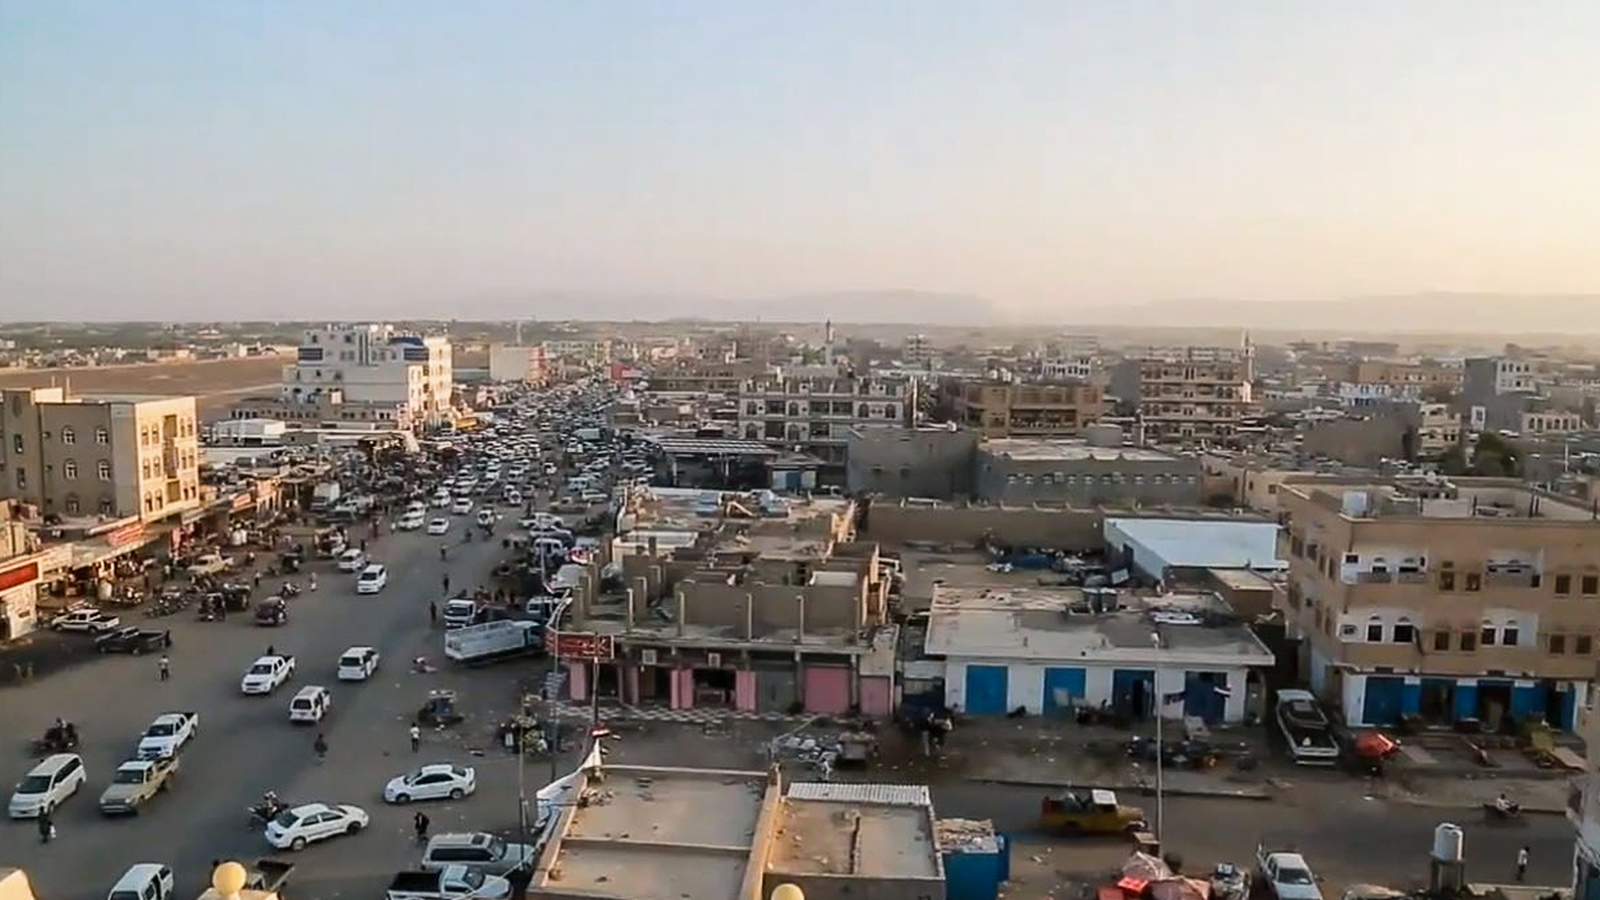 ‪مأرب تحولت خلال السنوات الأخيرة إلى عاصمة عسكرية للحكومة اليمنية الشرعية‬  (الجزيرة)